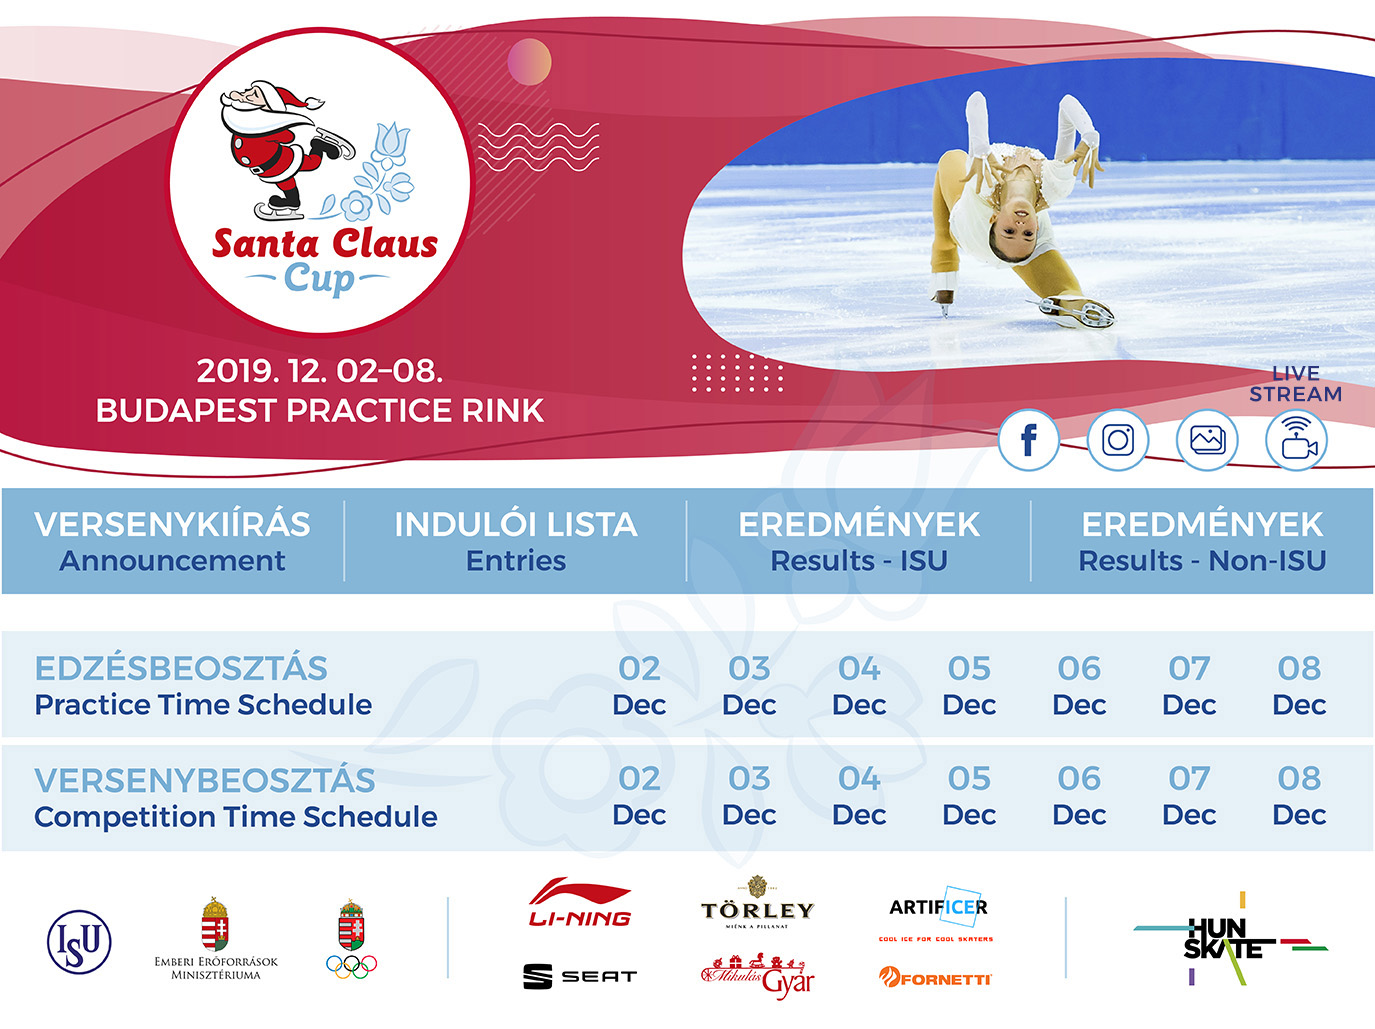 Santa Claus Cup 2019